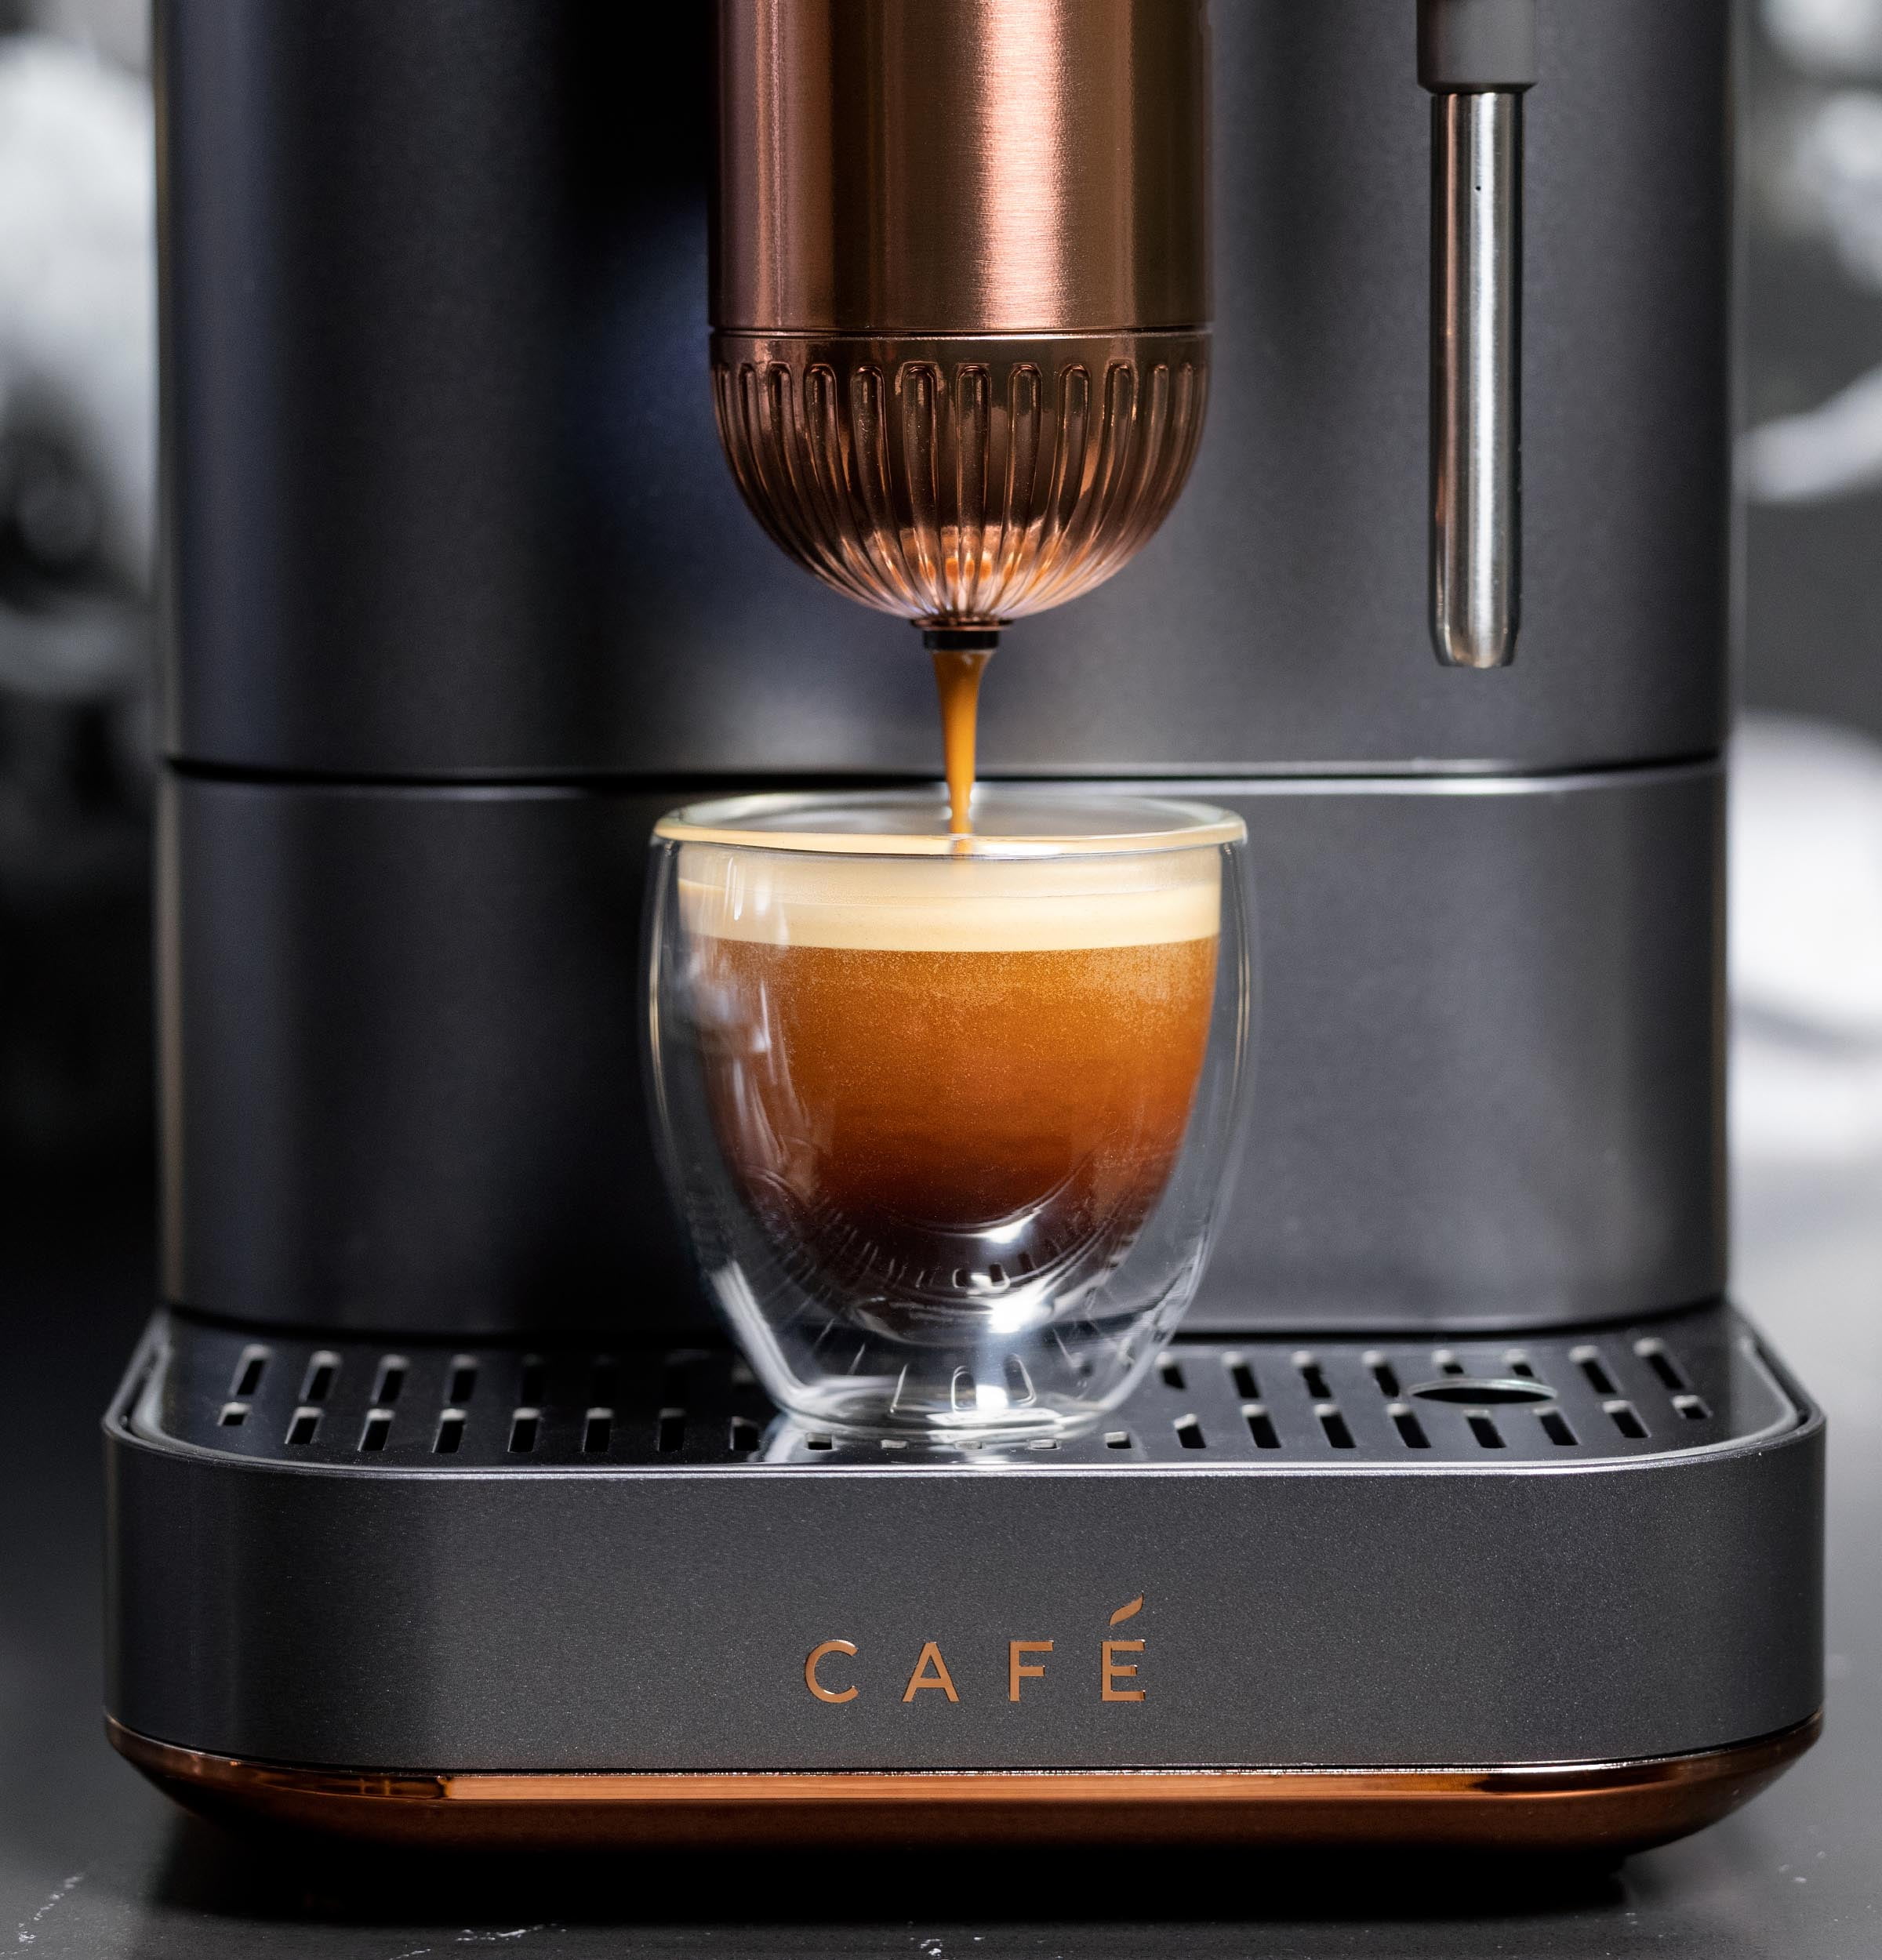  Cafe Bueno Super Automatic Espresso & Coffee Machine